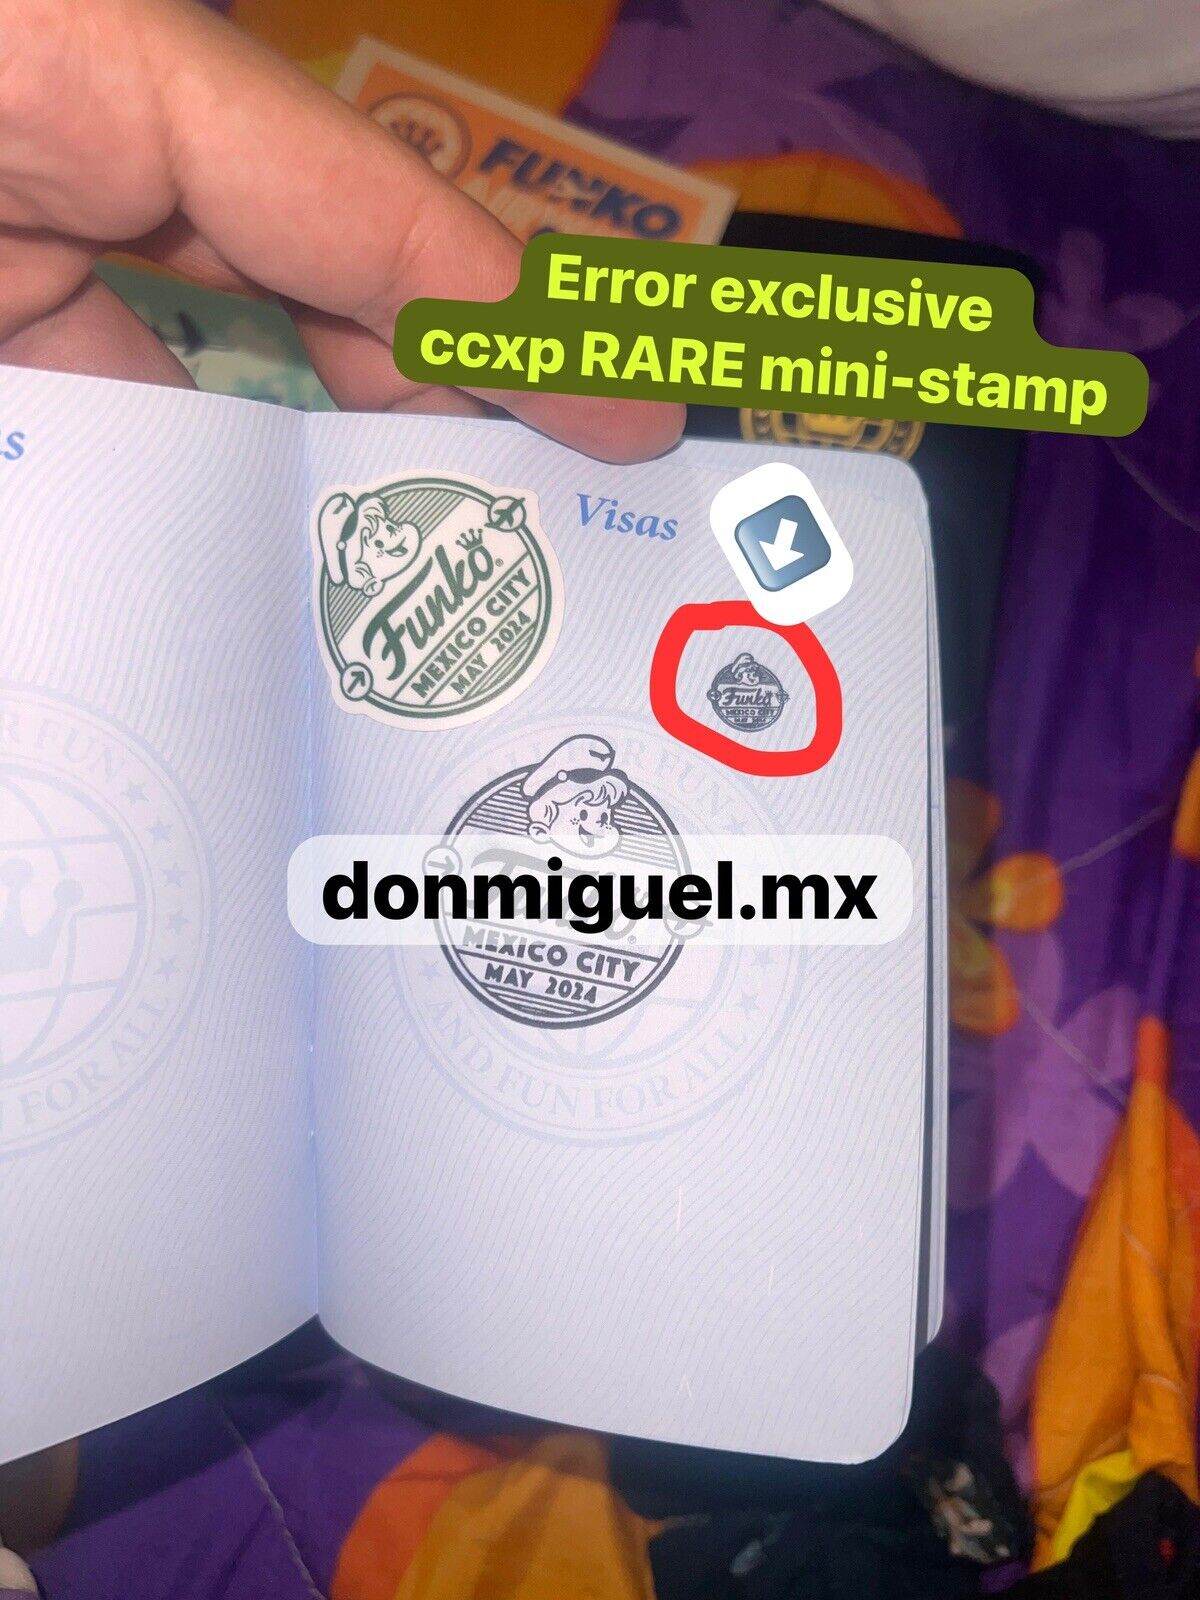 MINI STAMP ULTRA RARE CCXP MEXICO EXCLUSIVE PASSPORT  STAMP Funko POP